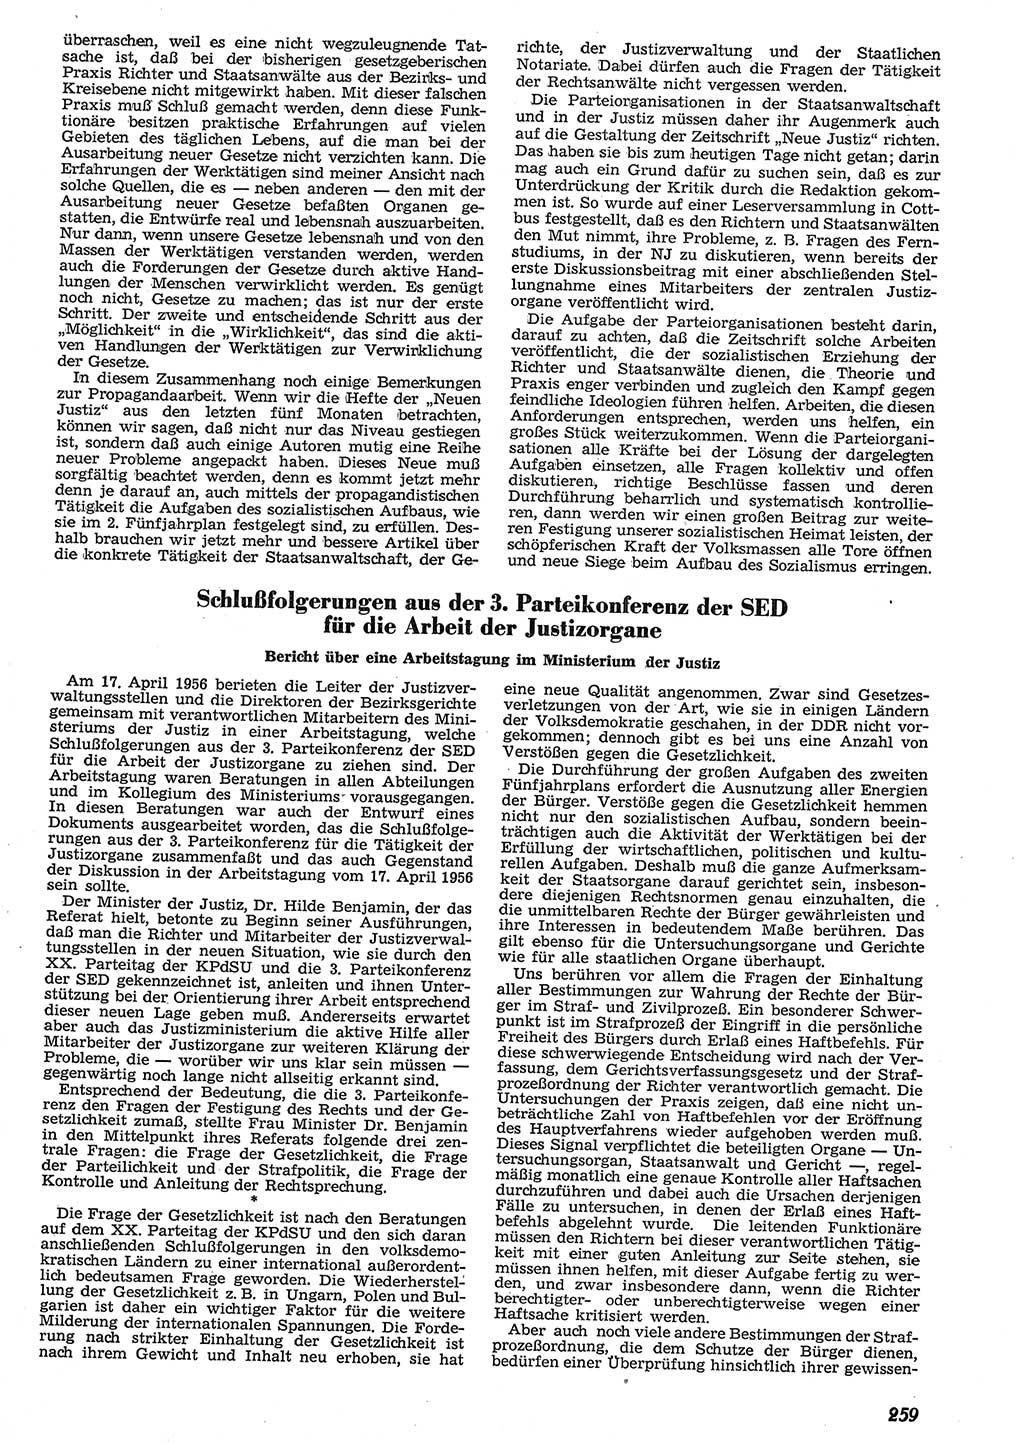 Neue Justiz (NJ), Zeitschrift für Recht und Rechtswissenschaft [Deutsche Demokratische Republik (DDR)], 10. Jahrgang 1956, Seite 259 (NJ DDR 1956, S. 259)